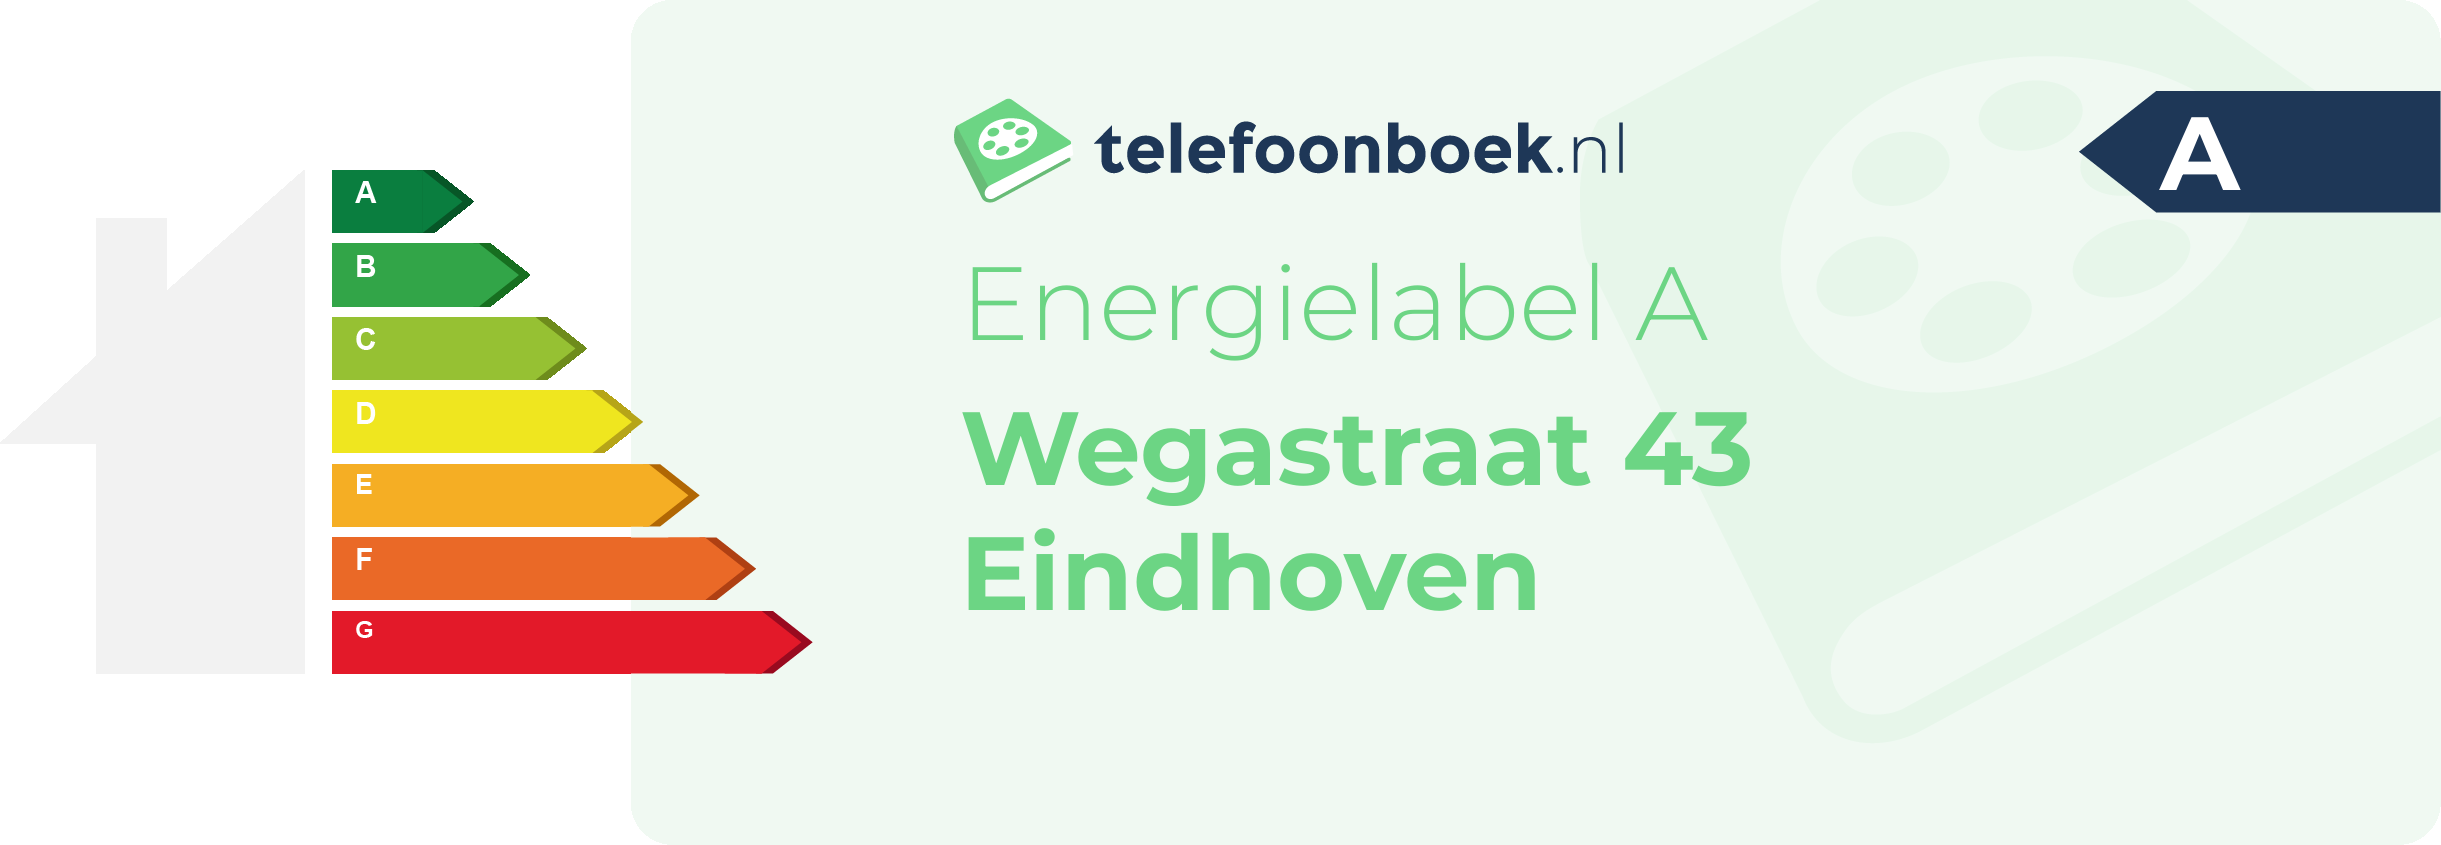 Energielabel Wegastraat 43 Eindhoven